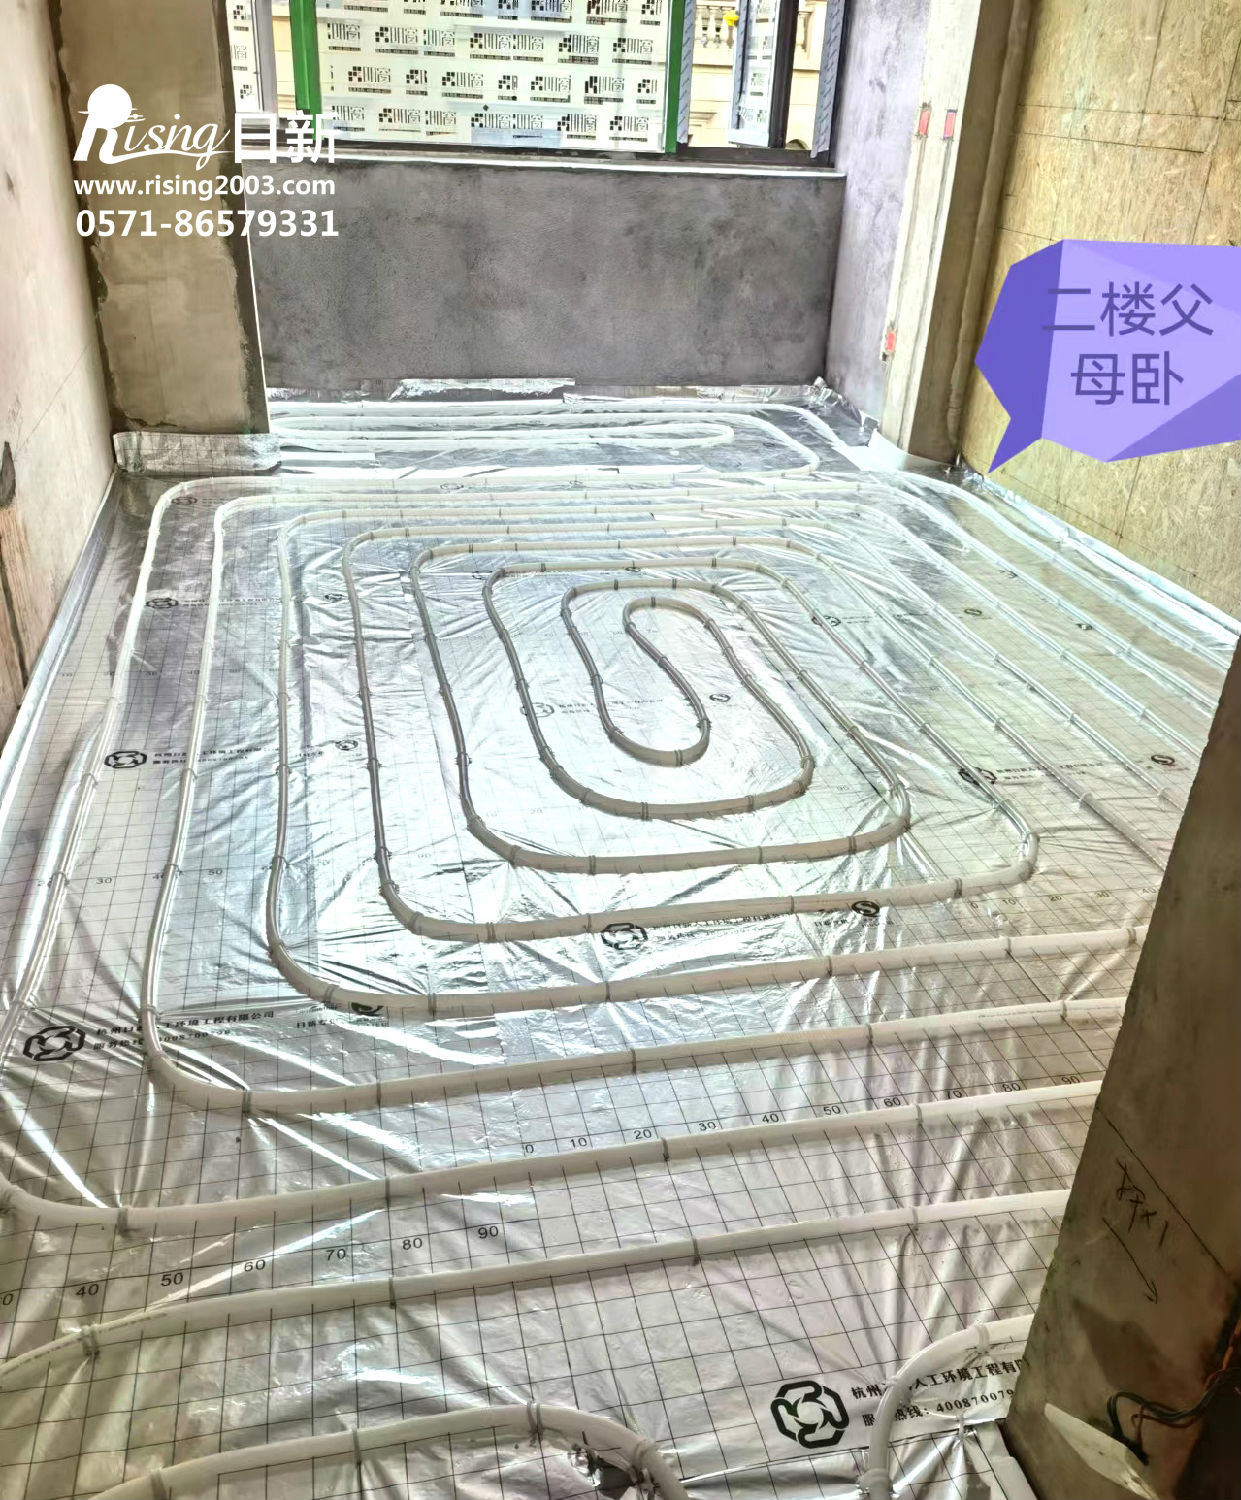 九龙仓雍景山风冷热泵系统地暖安装阶段【日新环境】